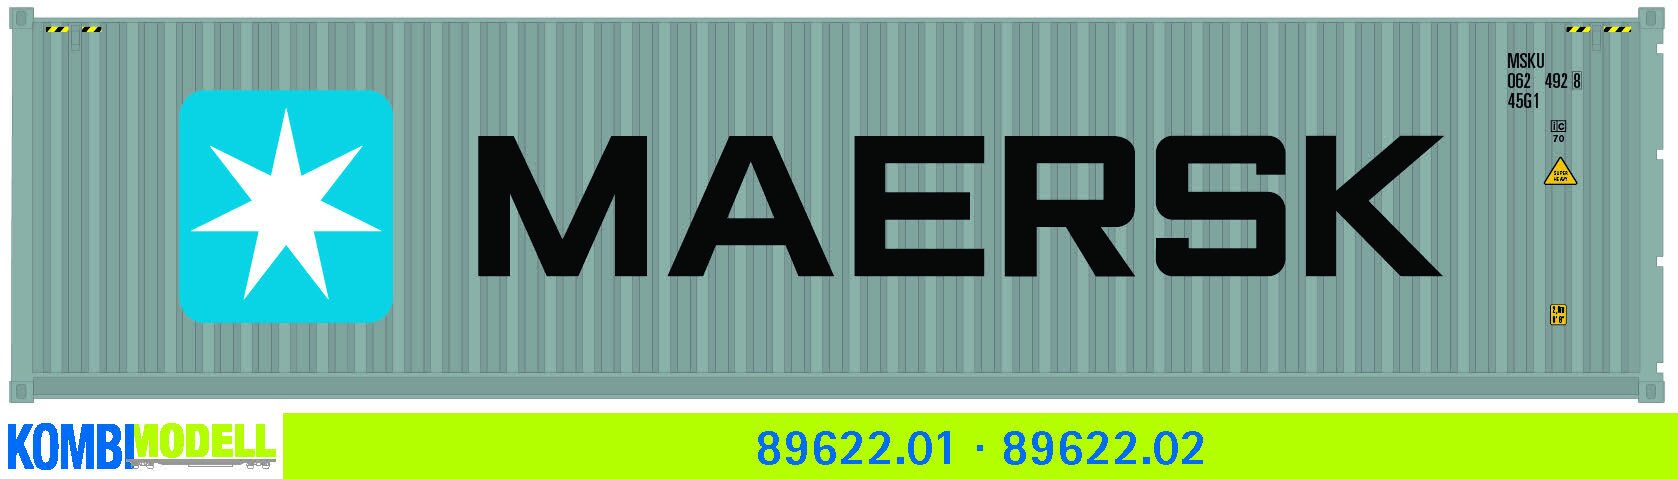 Kombimodell 89622.02 Ct 40' (45G1) »Maersk« ═ SoSe 